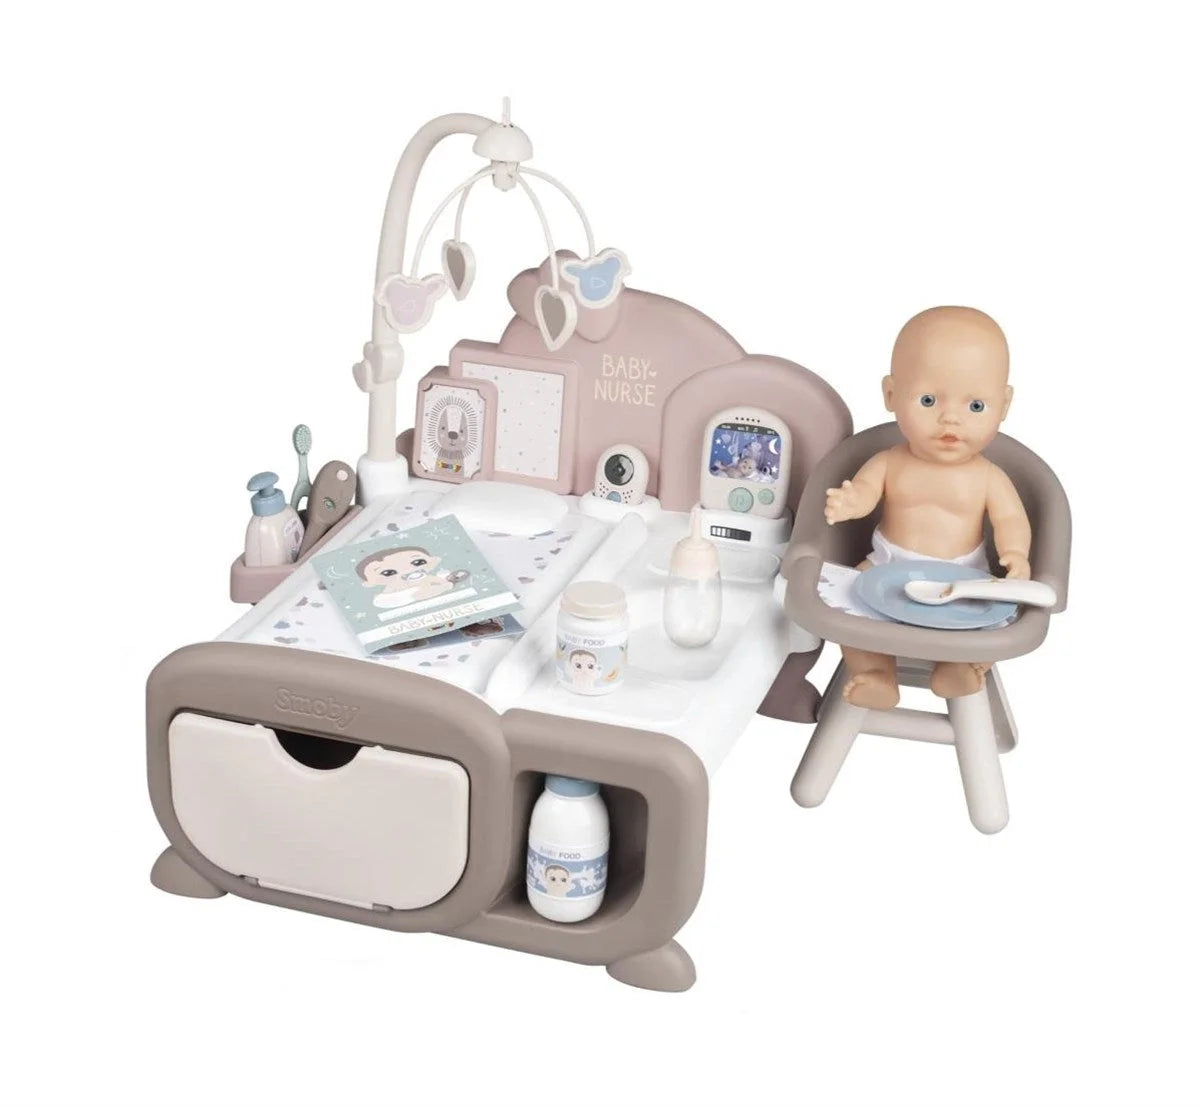 Smoby Baby Nurse Bebek Bakım Ünitesi Oyun Seti, 3'ü 1 Arada Set 220375 | Toysall